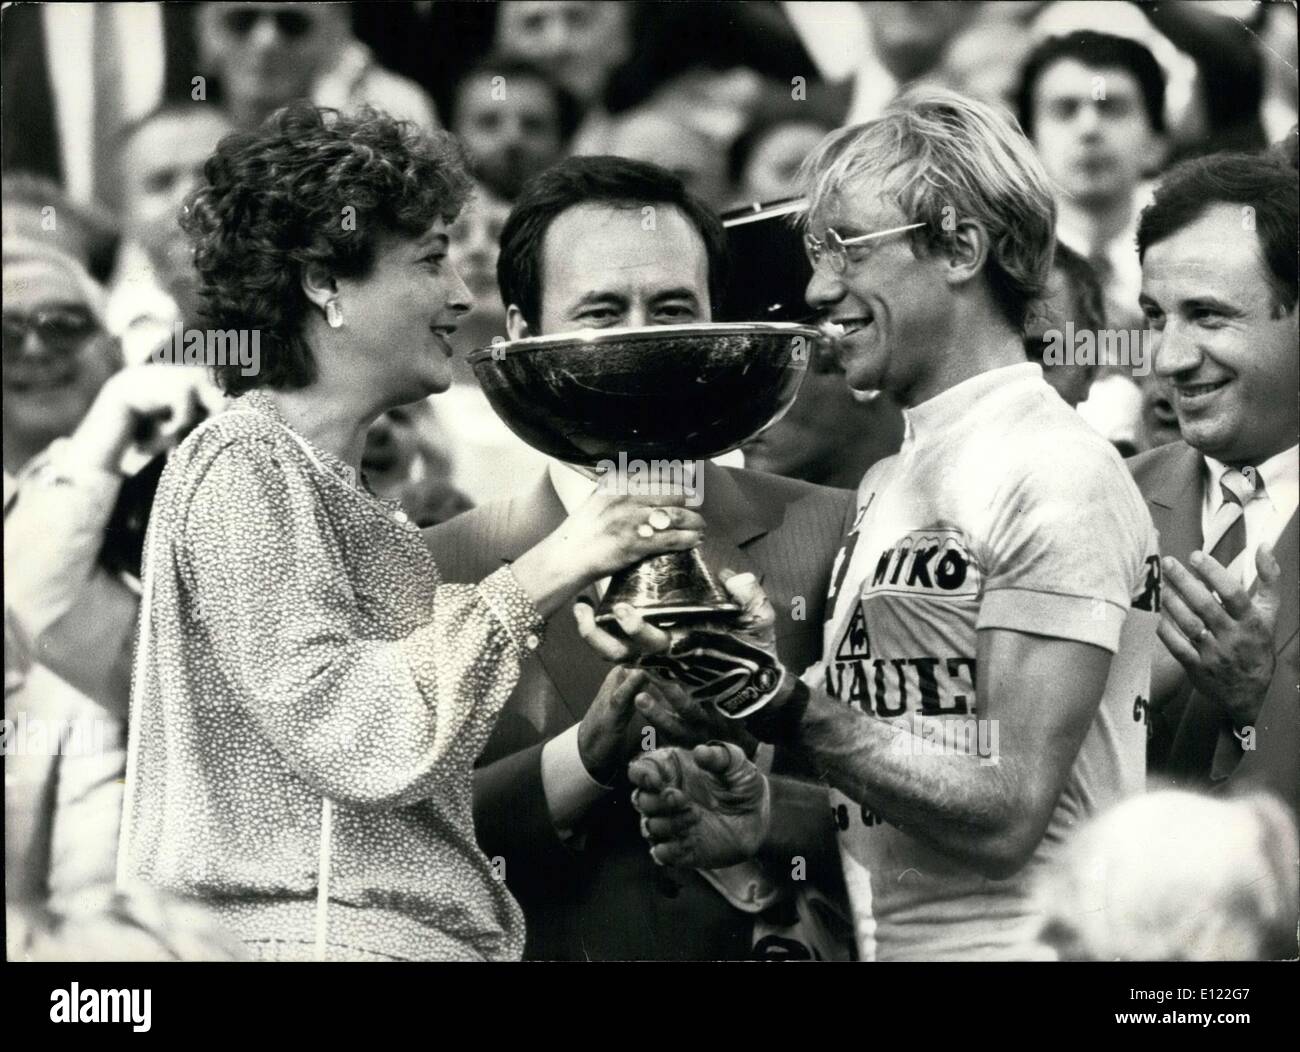 Lug. 25, 1983 - Vincitore del Tour de France: Laurent Fignon Foto Stock